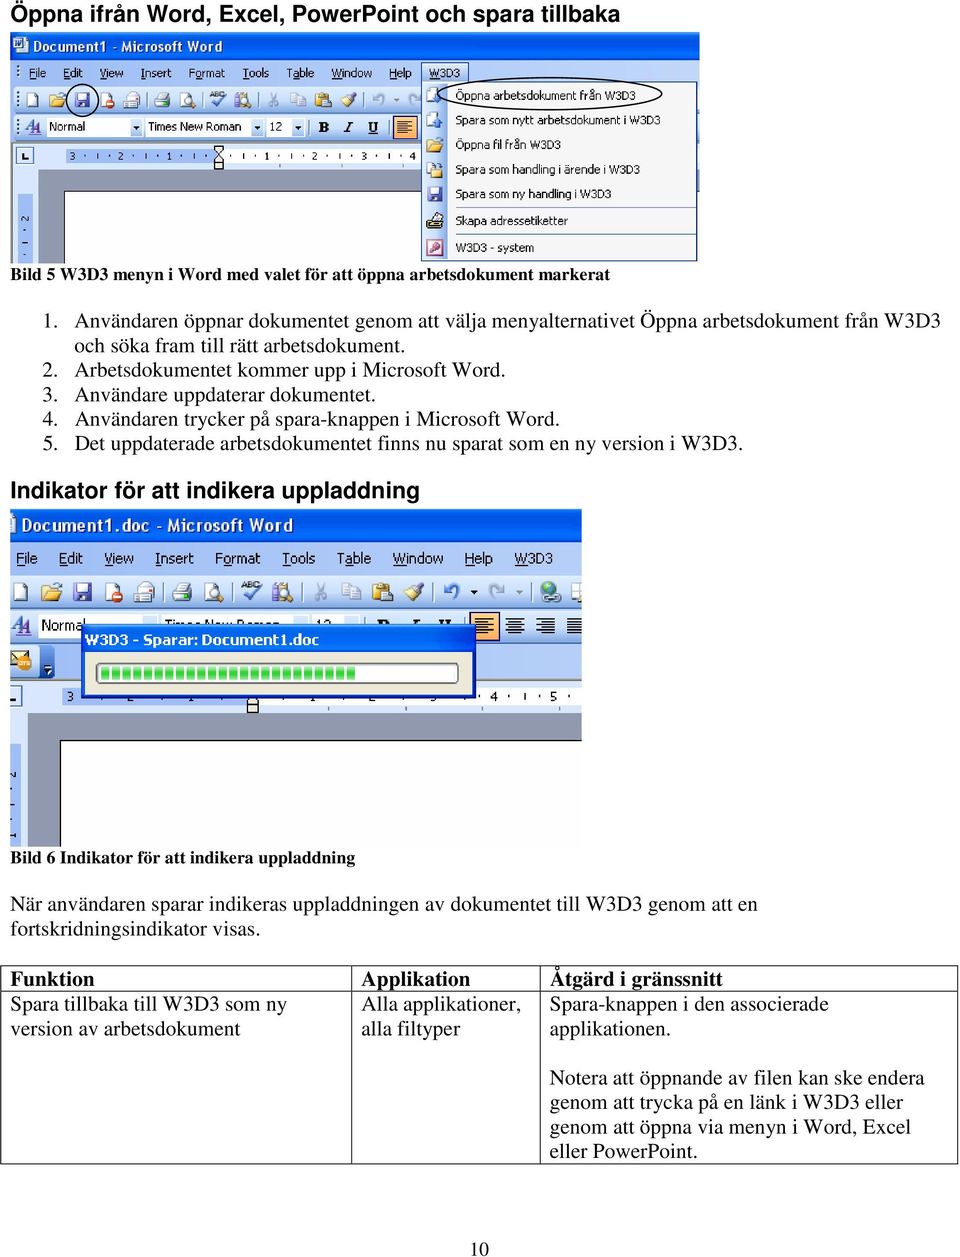 Användare uppdaterar dokumentet. 4. Användaren trycker på spara-knappen i Microsoft Word. 5. Det uppdaterade arbetsdokumentet finns nu sparat som en ny version i W3D3.